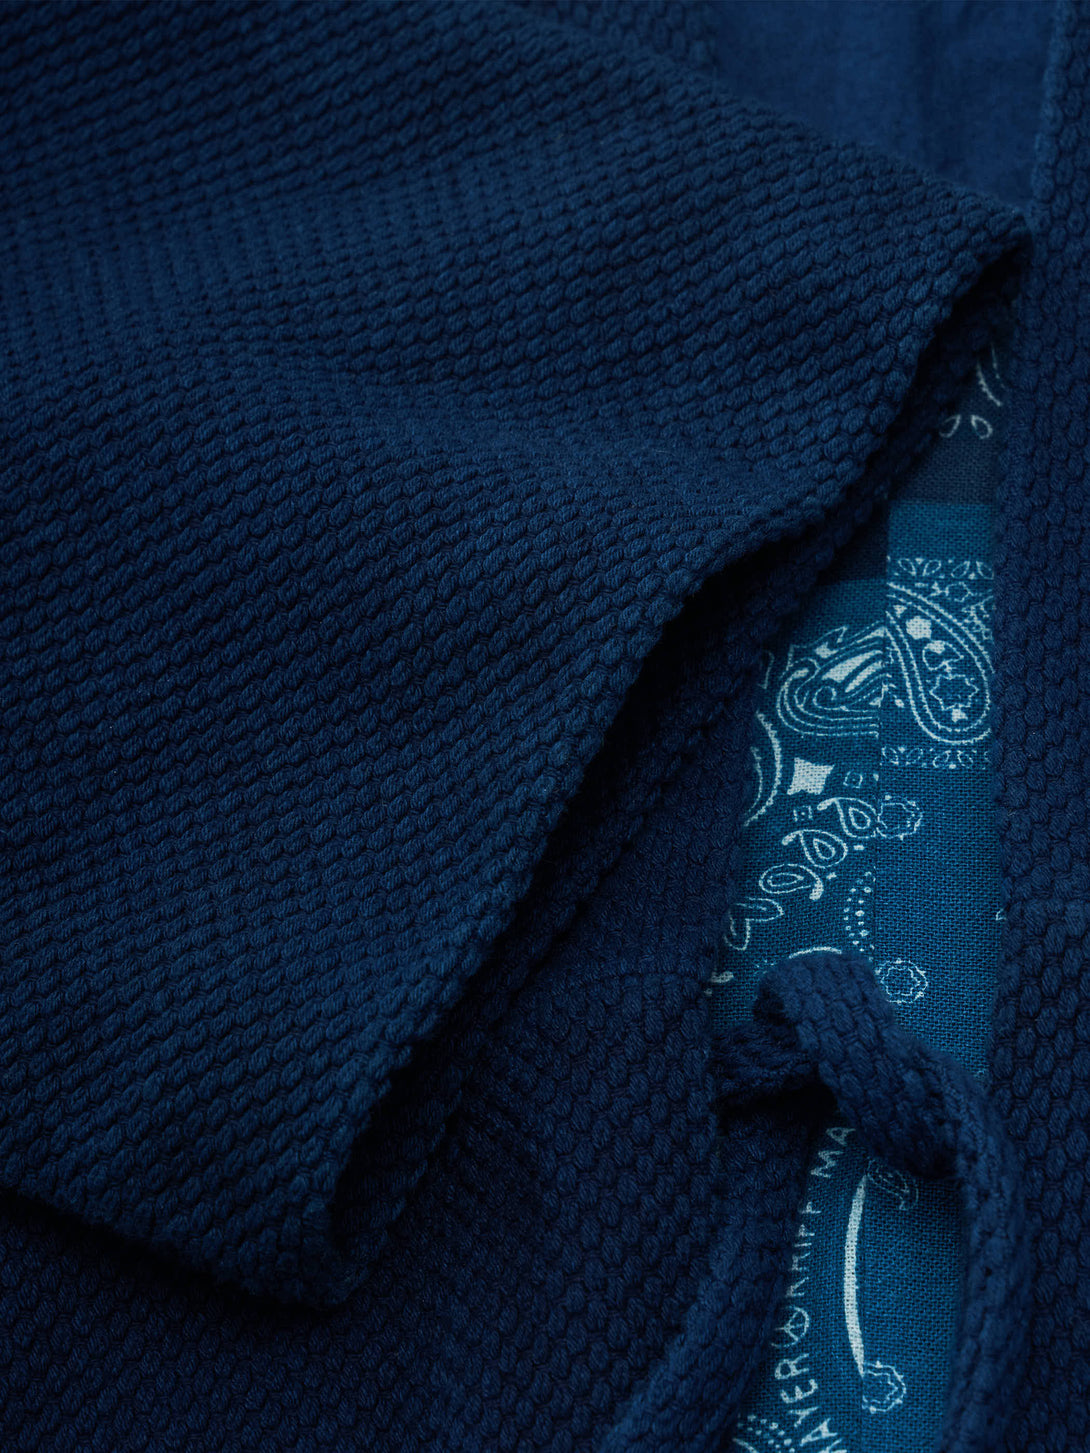 高級感のある刺し子織り生地の美しい陰影が特徴の藍染半纏、丁寧に織られたディテール